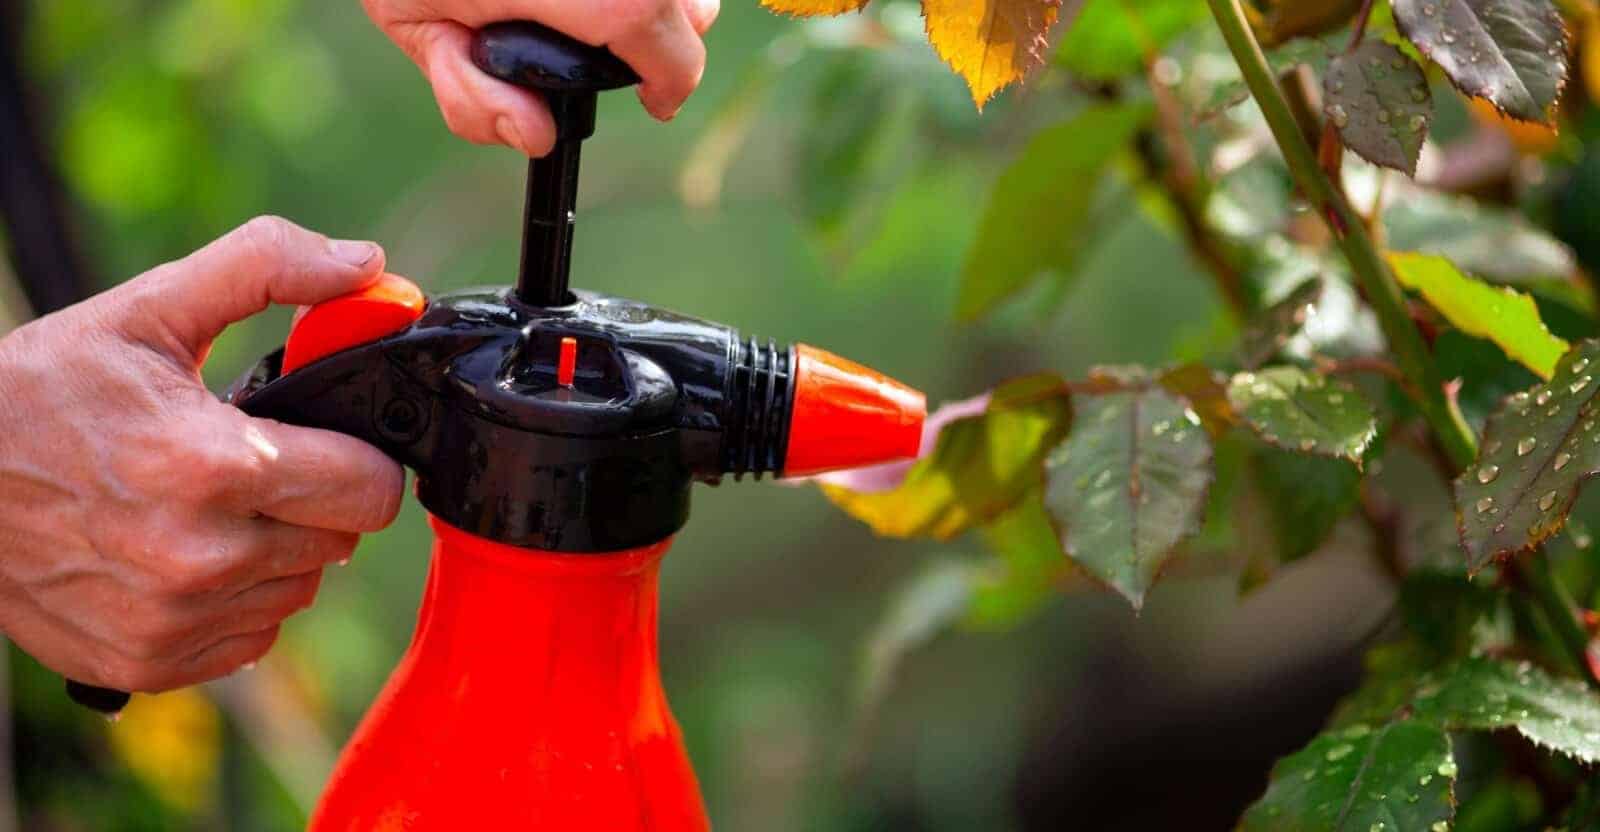 handheld garden sprayer